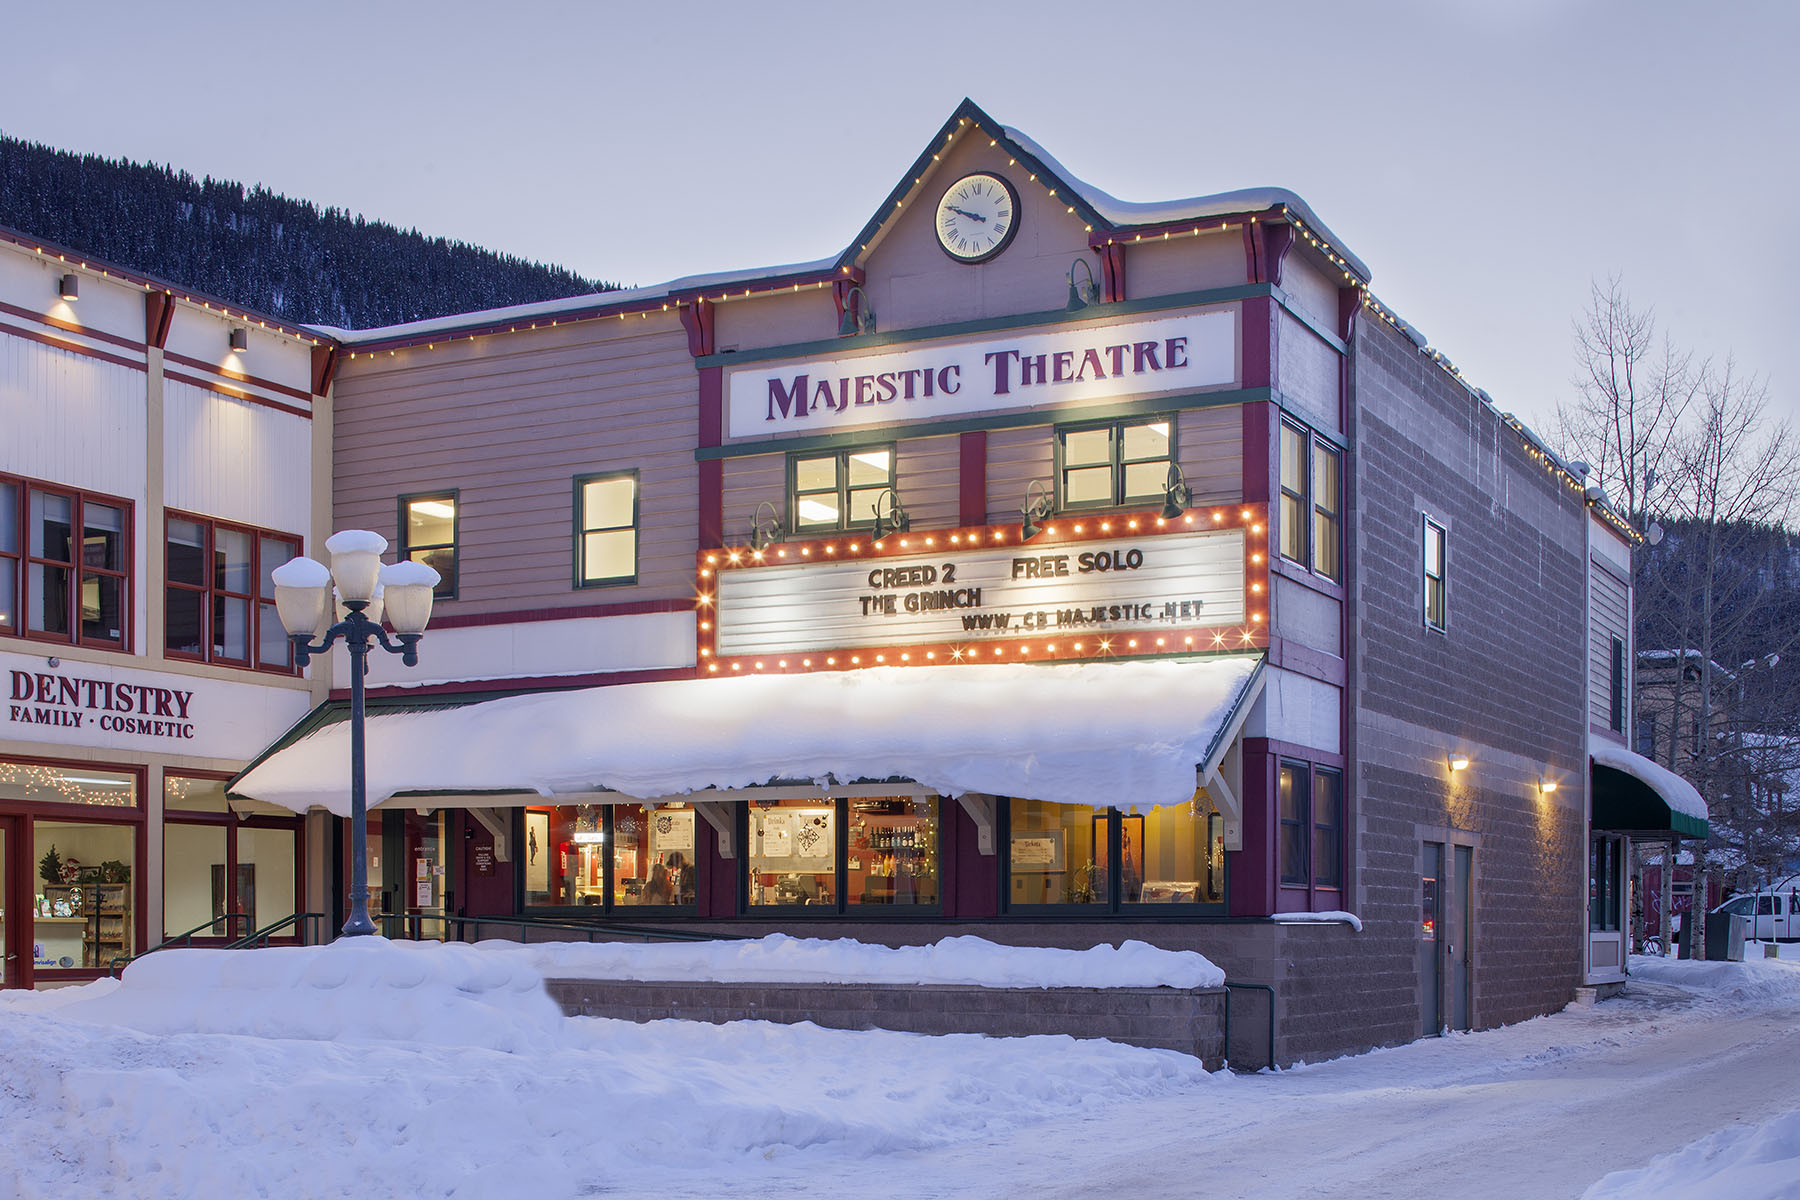 The Majestic Theatre - Crested Butte, Colorado